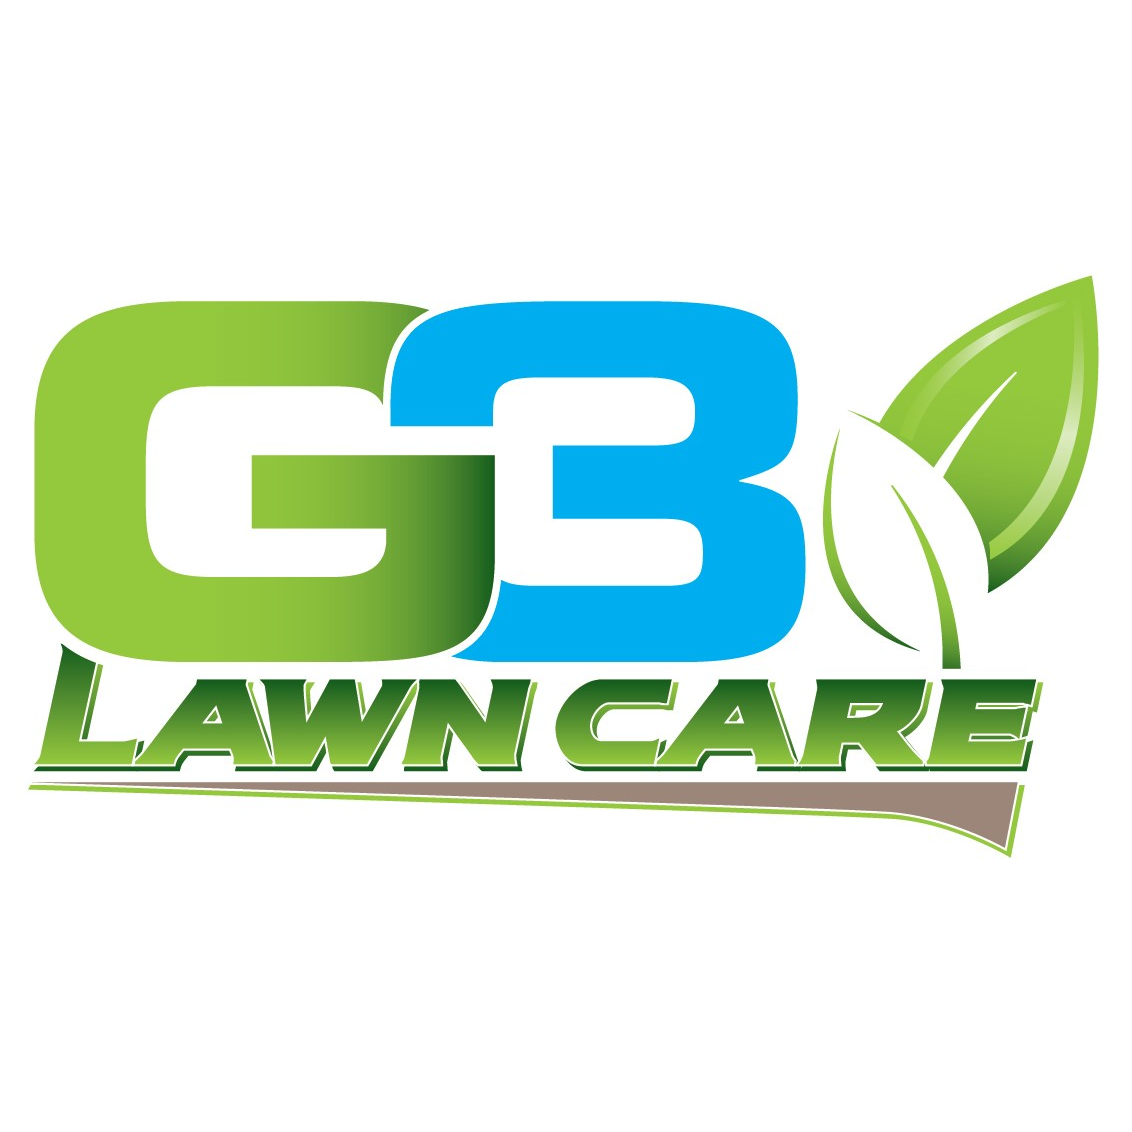 G3 Lawn Care, LLC